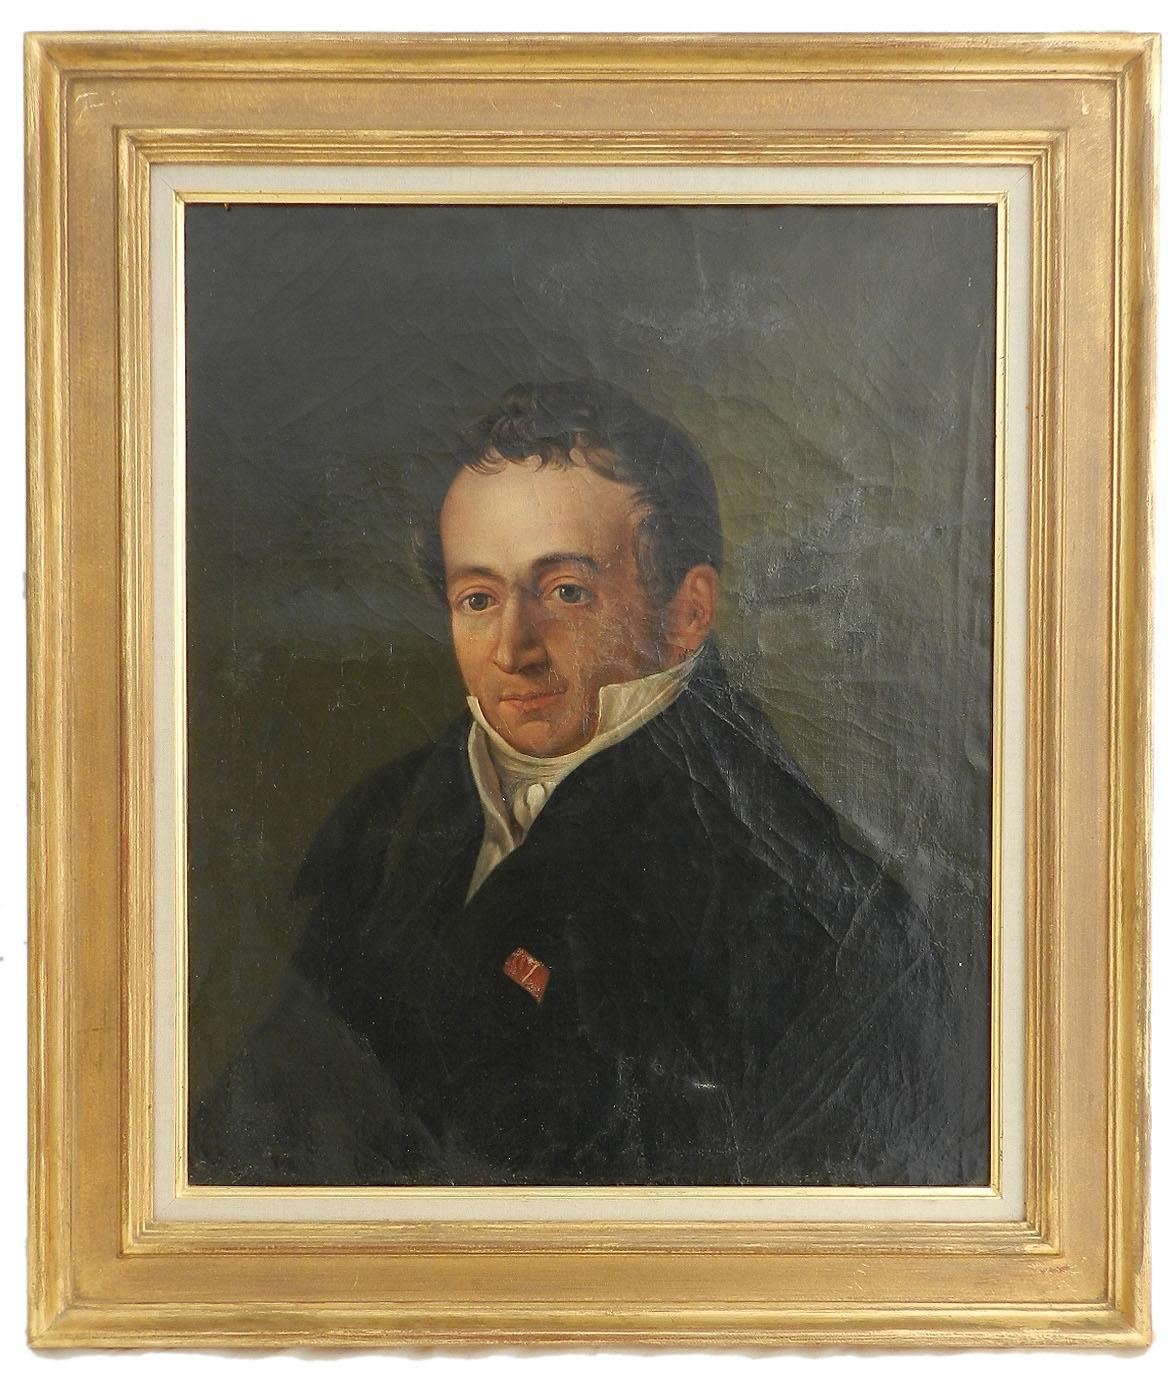 Unknown Portrait Painting – Porträtgemälde eines französischen Gentleman:: Öl auf Leinwand:: frühes 19. Jahrhundert